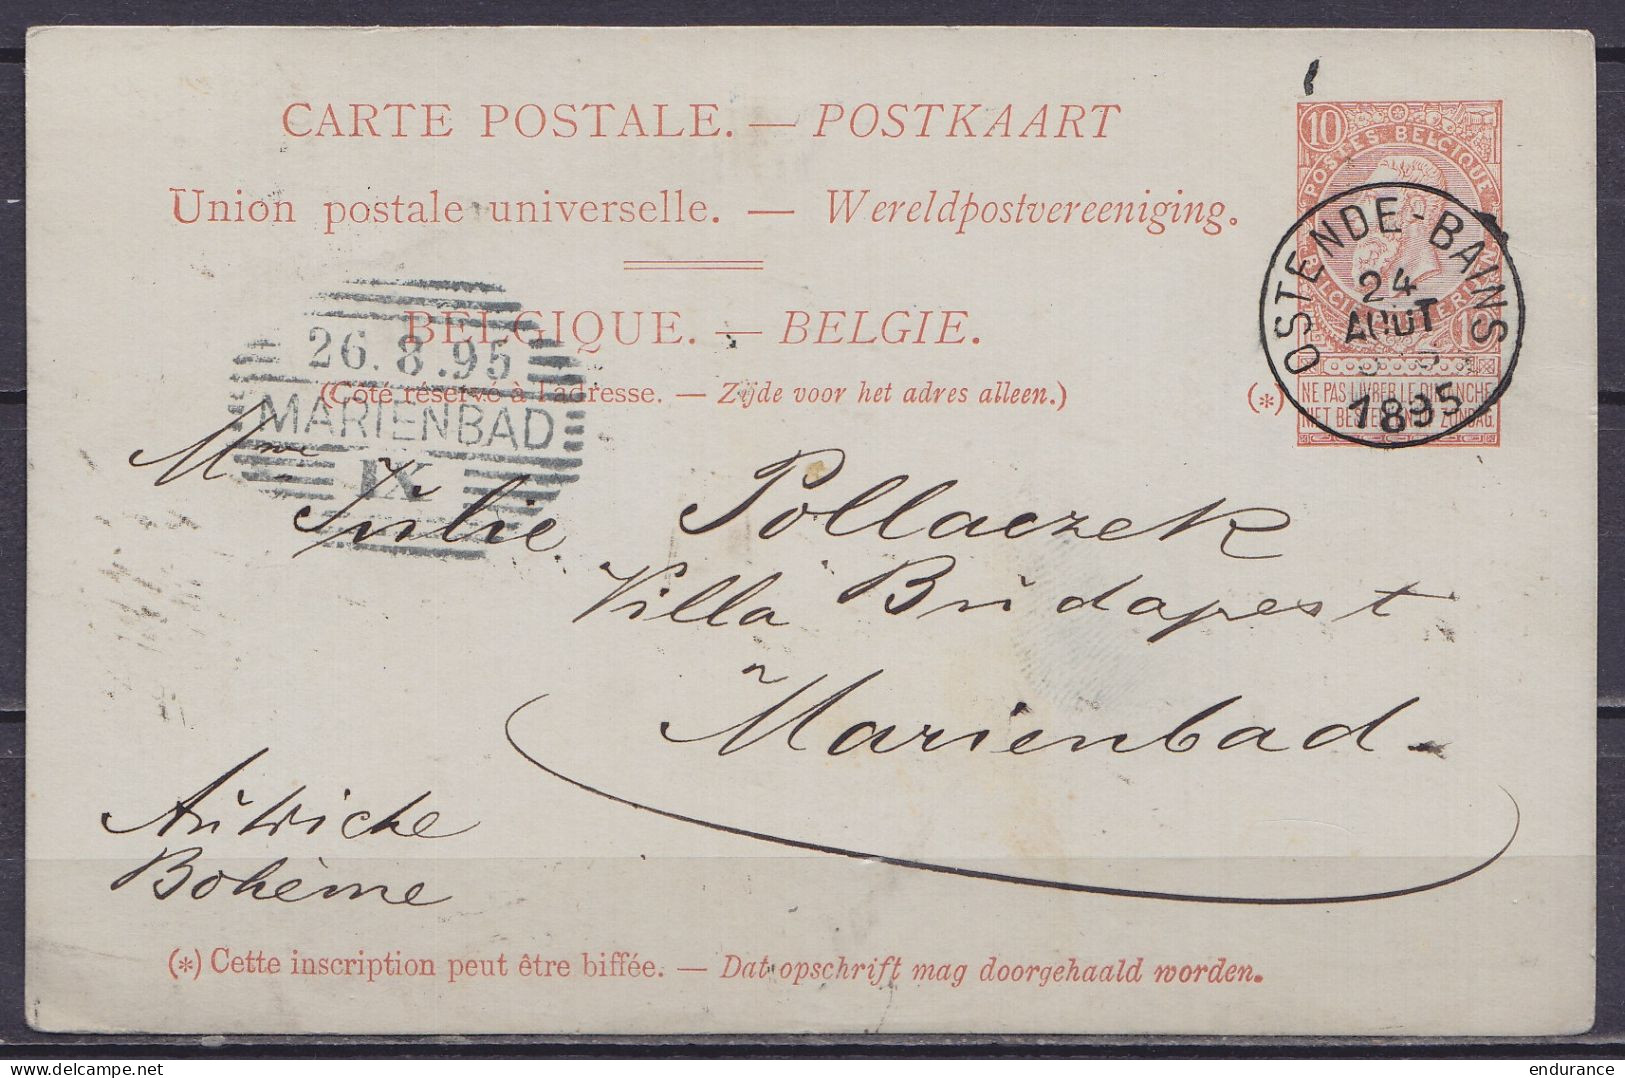 EP CP 10c Rouge-brun (type N°57) Càd OSTENDE-BAINS /24 AOUT 1895 Pour MARIENBAD Bohême Autriche - Càd Arrivée MARIENBAD - Briefkaarten 1871-1909